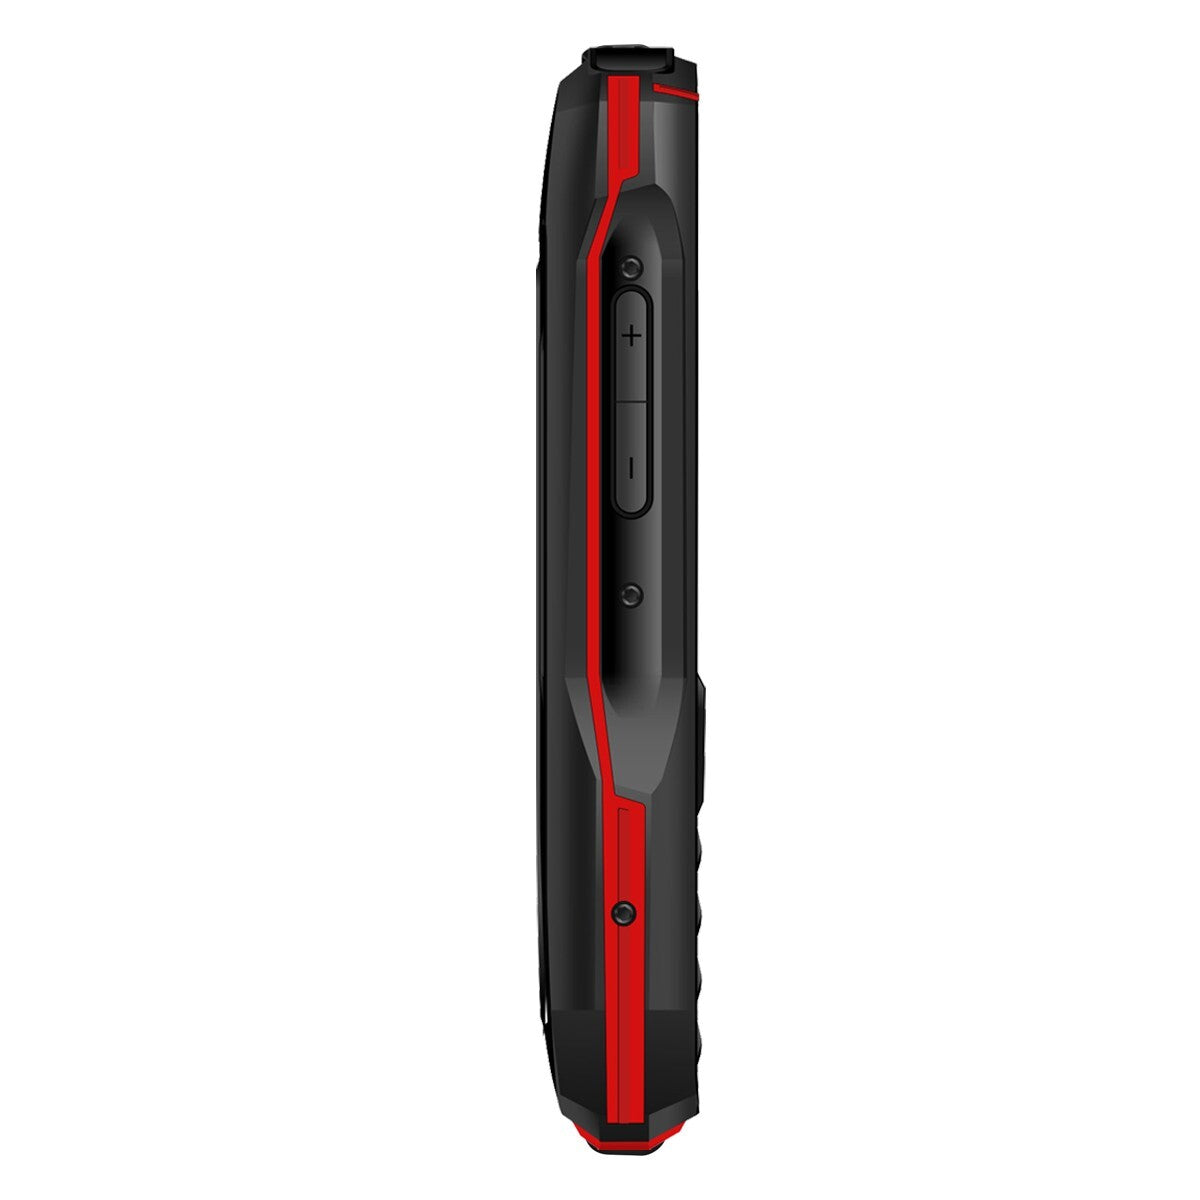 Odolný tlačidlový telefón Aligator K50 eXtremo, KaiOS, červená